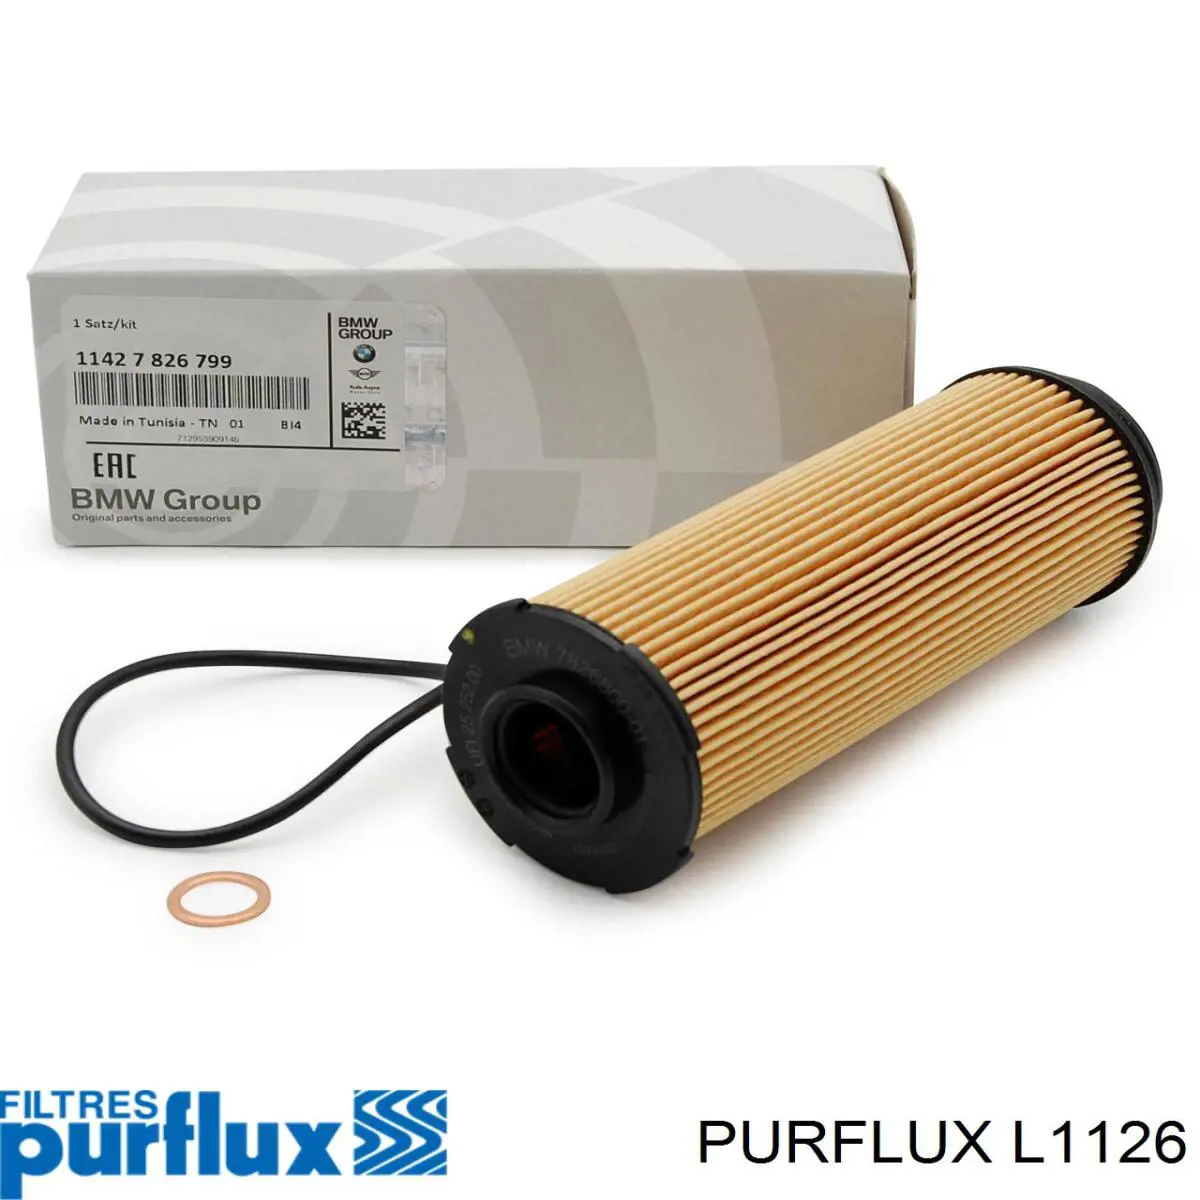 L1126 Purflux filtro de aceite